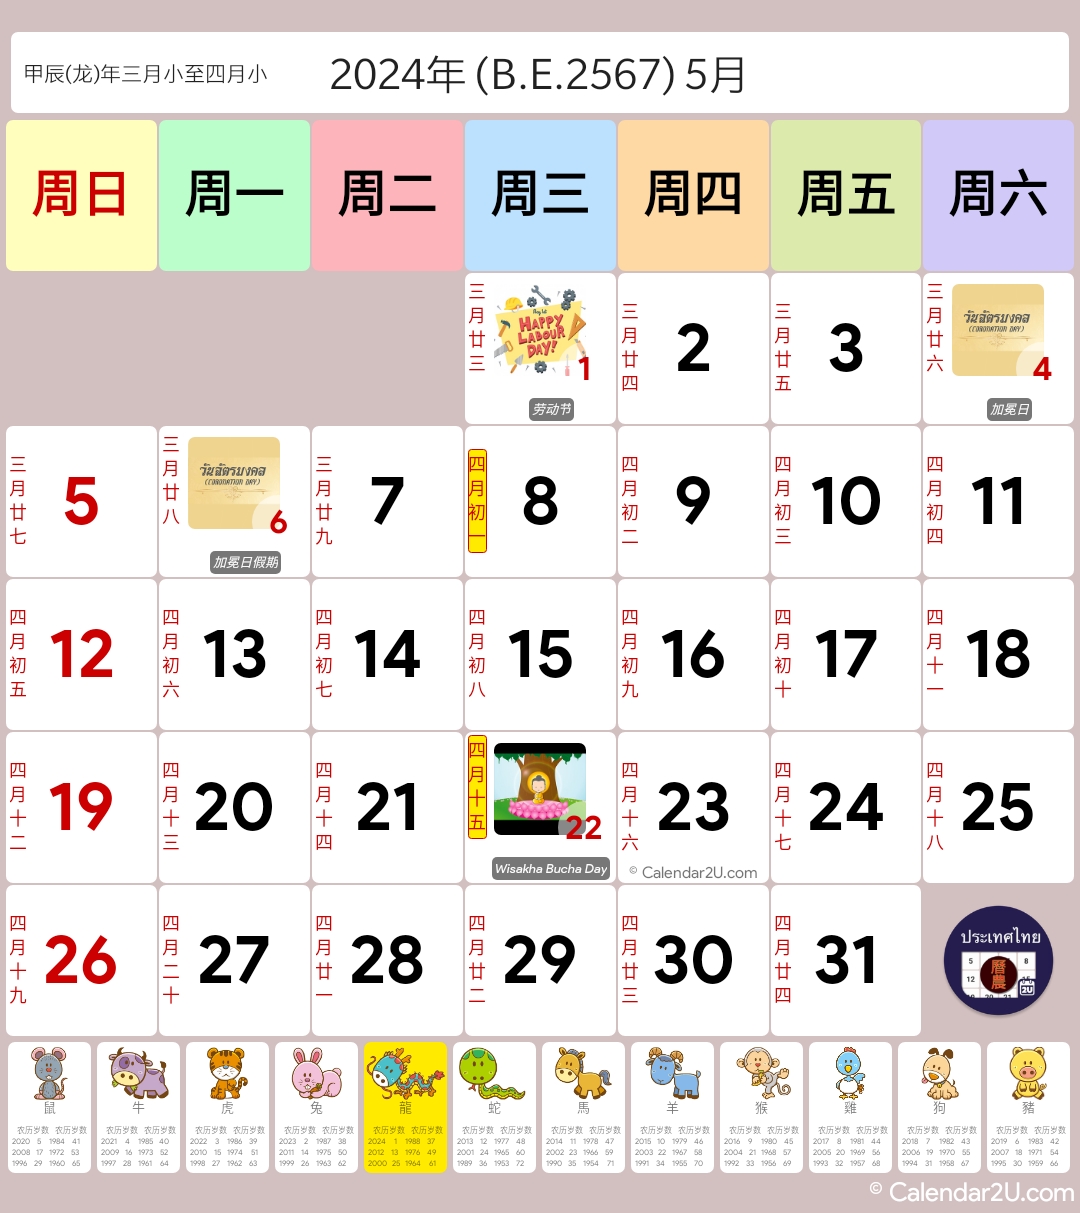 ประเทศไทย - จันทรคติจีน (Thailand - Chinese Lunar) Calendar